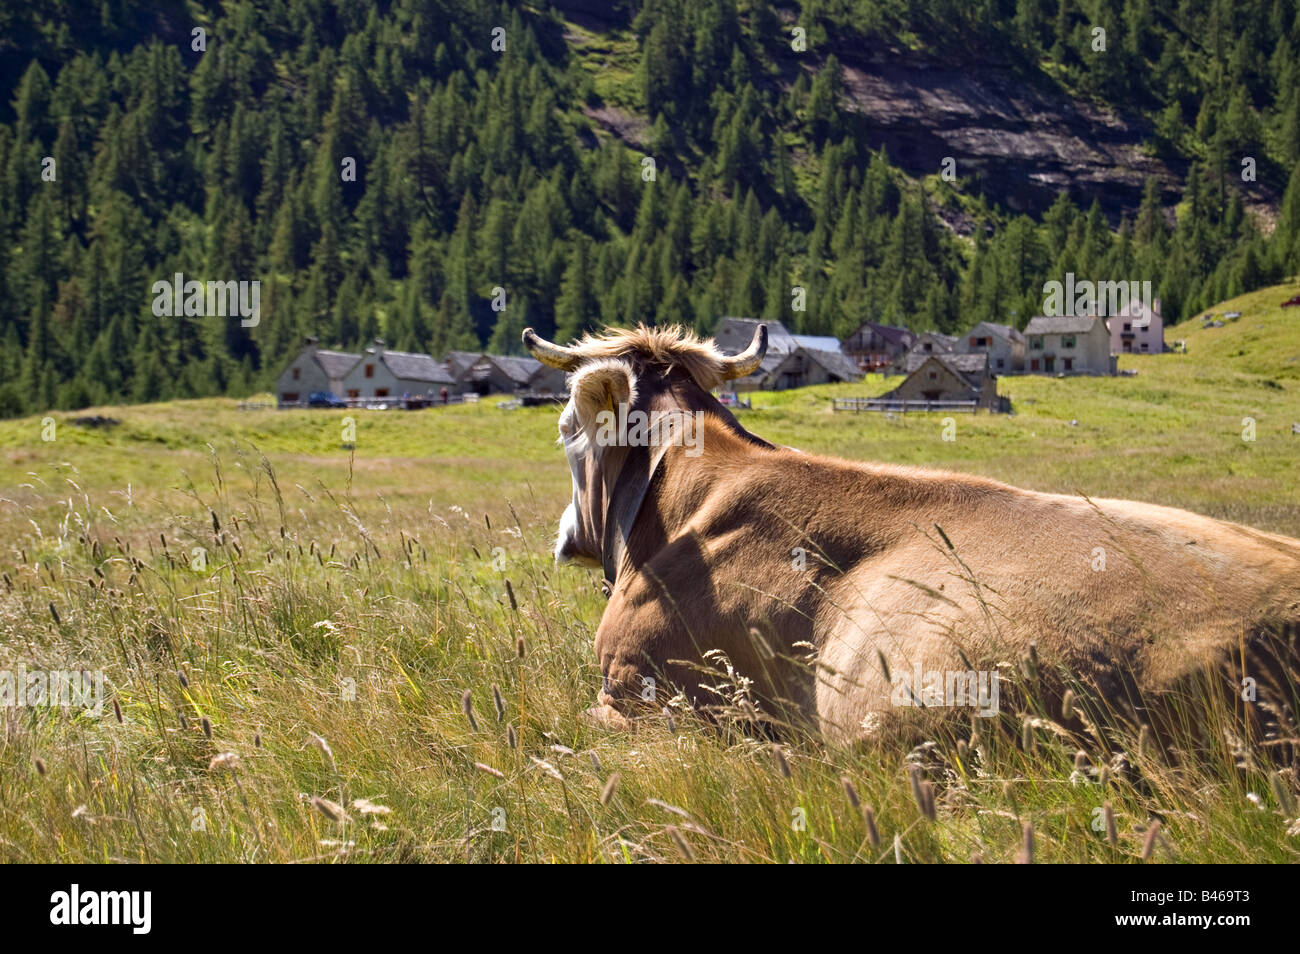 Une vache est au repos dans un alpage Alpe Veglia, parc naturel italien, Piémont Italie Banque D'Images